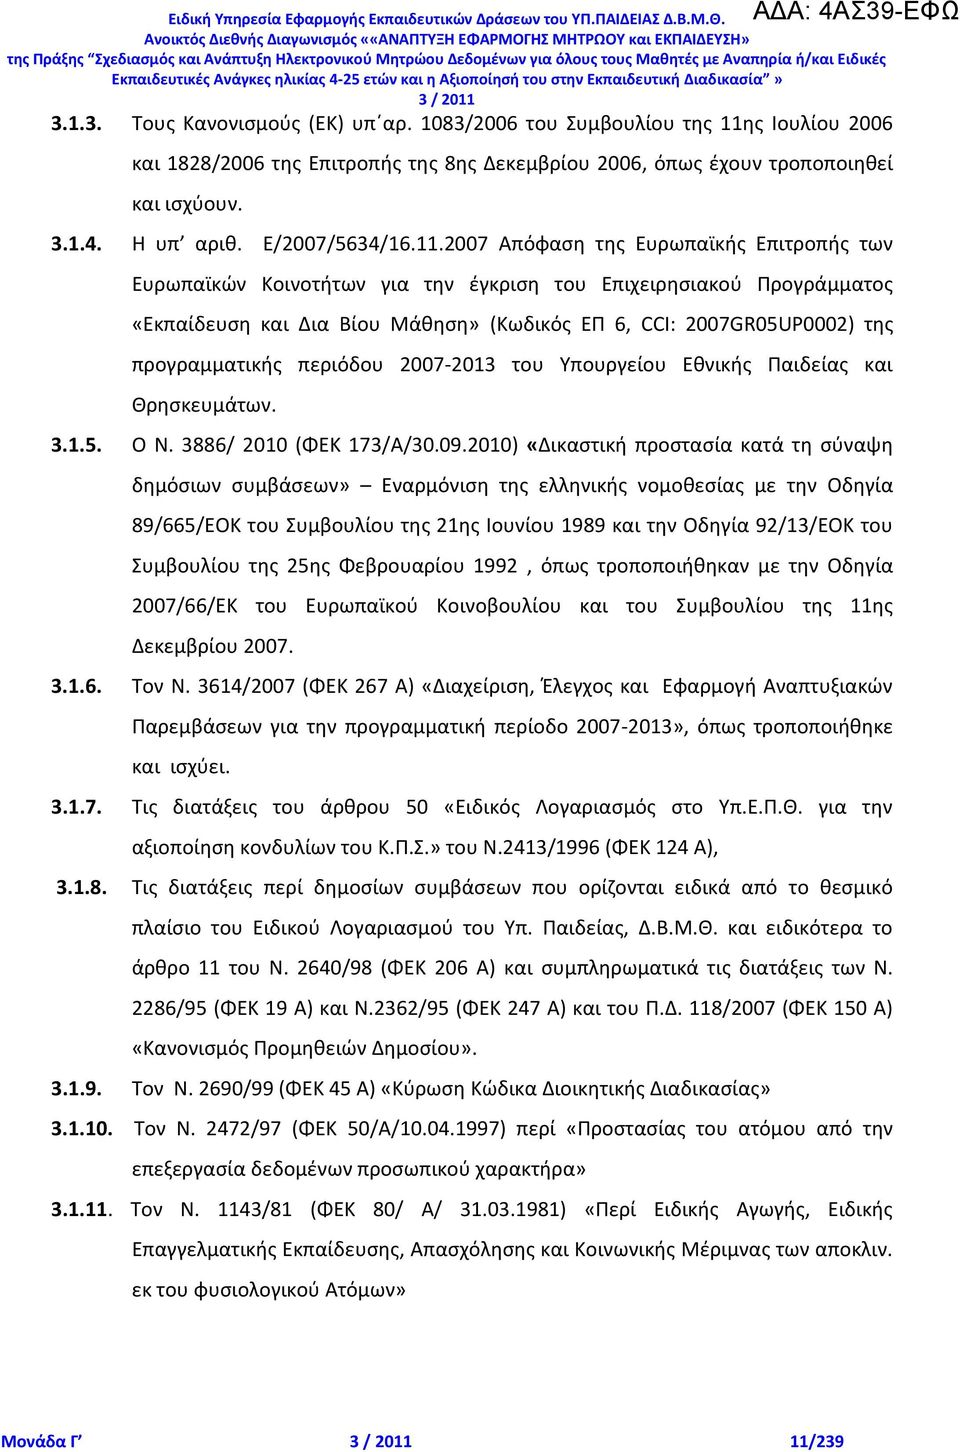 2007 Απόφαςθ τθσ Ευρωπαϊκισ Επιτροπισ των Ευρωπαϊκϊν Κοινοτιτων για τθν ζγκριςθ του Επιχειρθςιακοφ Ρρογράμματοσ «Εκπαίδευςθ και Δια Βίου Μάκθςθ» (Κωδικόσ ΕΡ 6, CCI: 2007GR05UP0002) τθσ προγραμματικισ